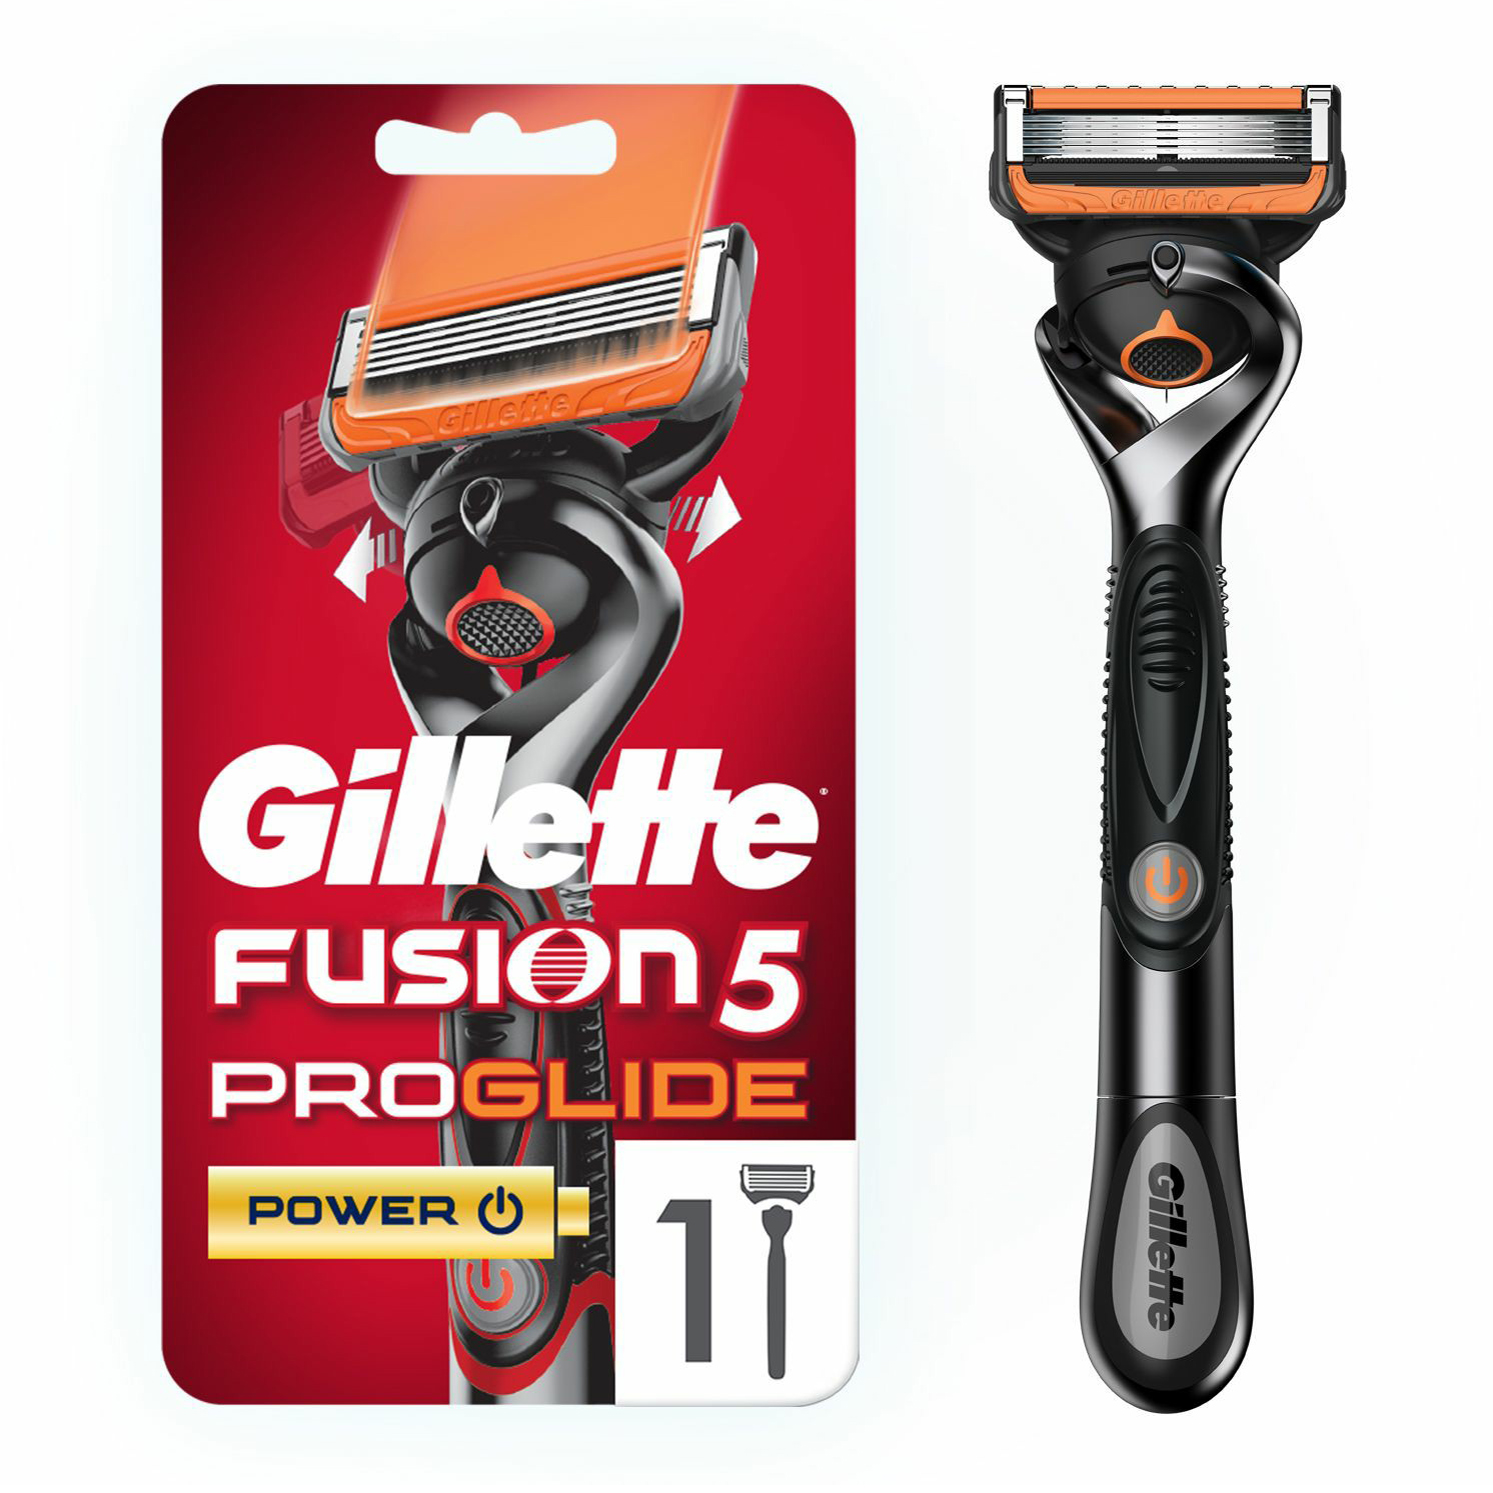 Бритвенный станок со сменной кассетой Gillette Fusion5 ProGlide Power с пятью лезвиями 1шт vox станок для бритья limited 3 лезвия с 1 сменной кассетой 1 0